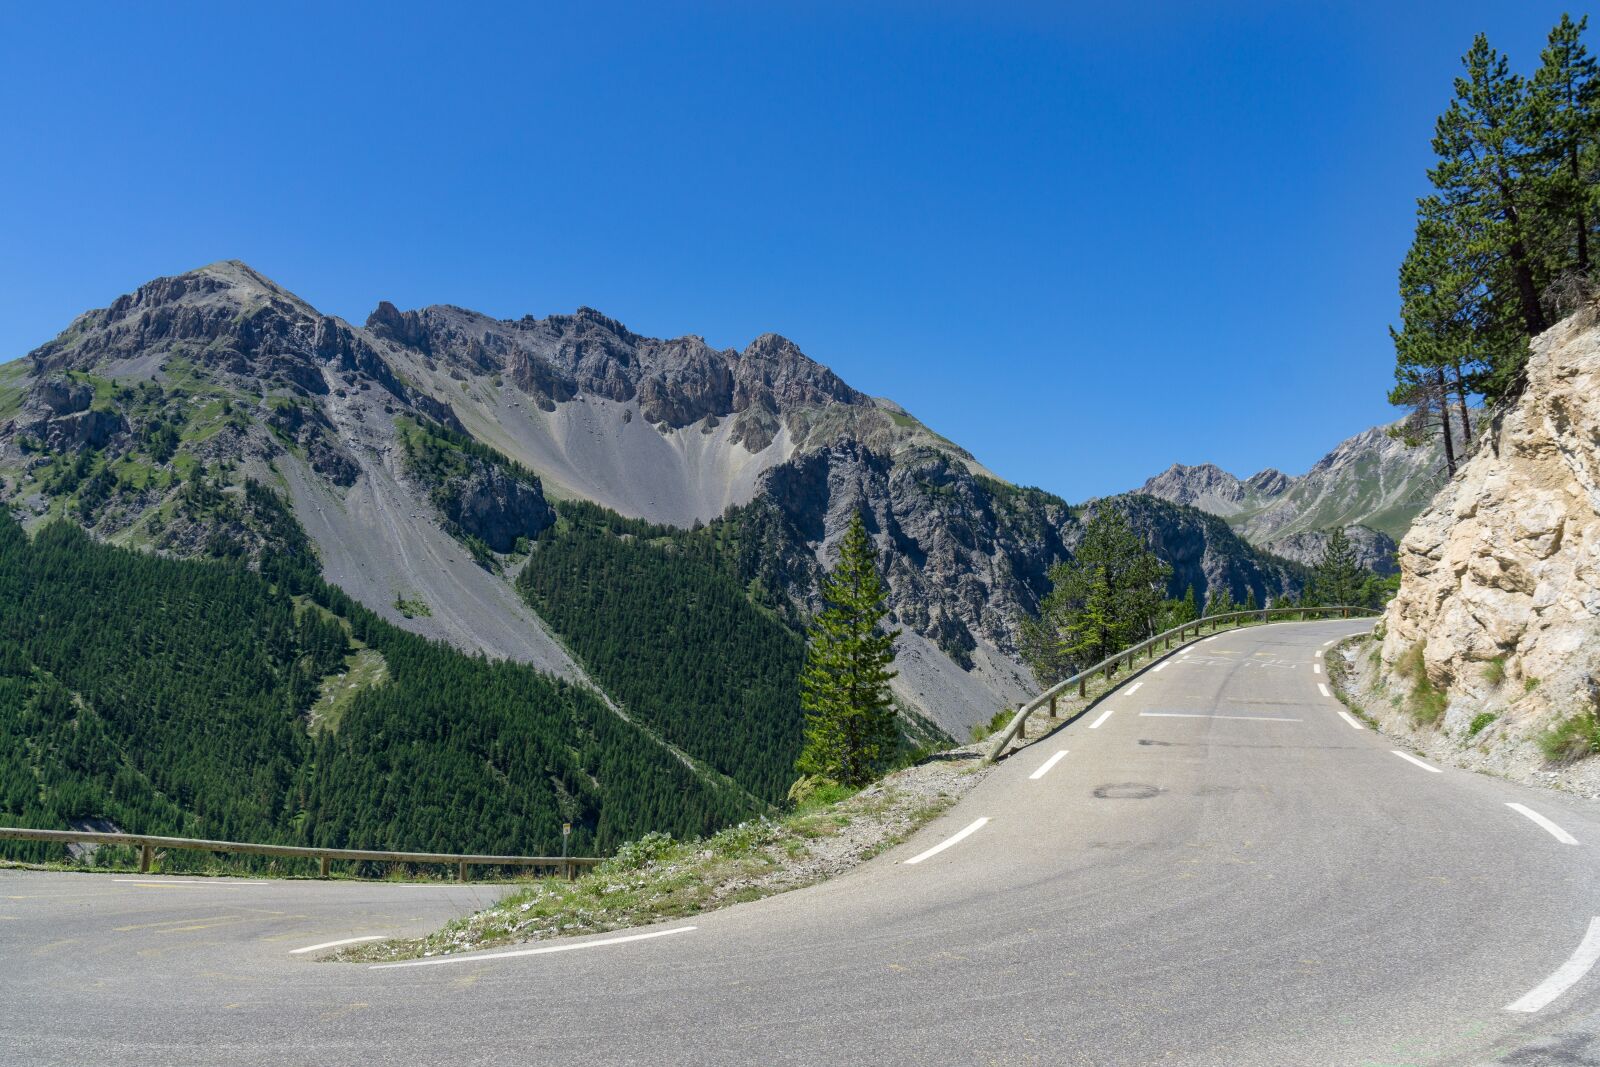 Sony Vario-Tessar T* E 16-70mm F4 ZA OSS sample photo. Alpine, road, landscape photography